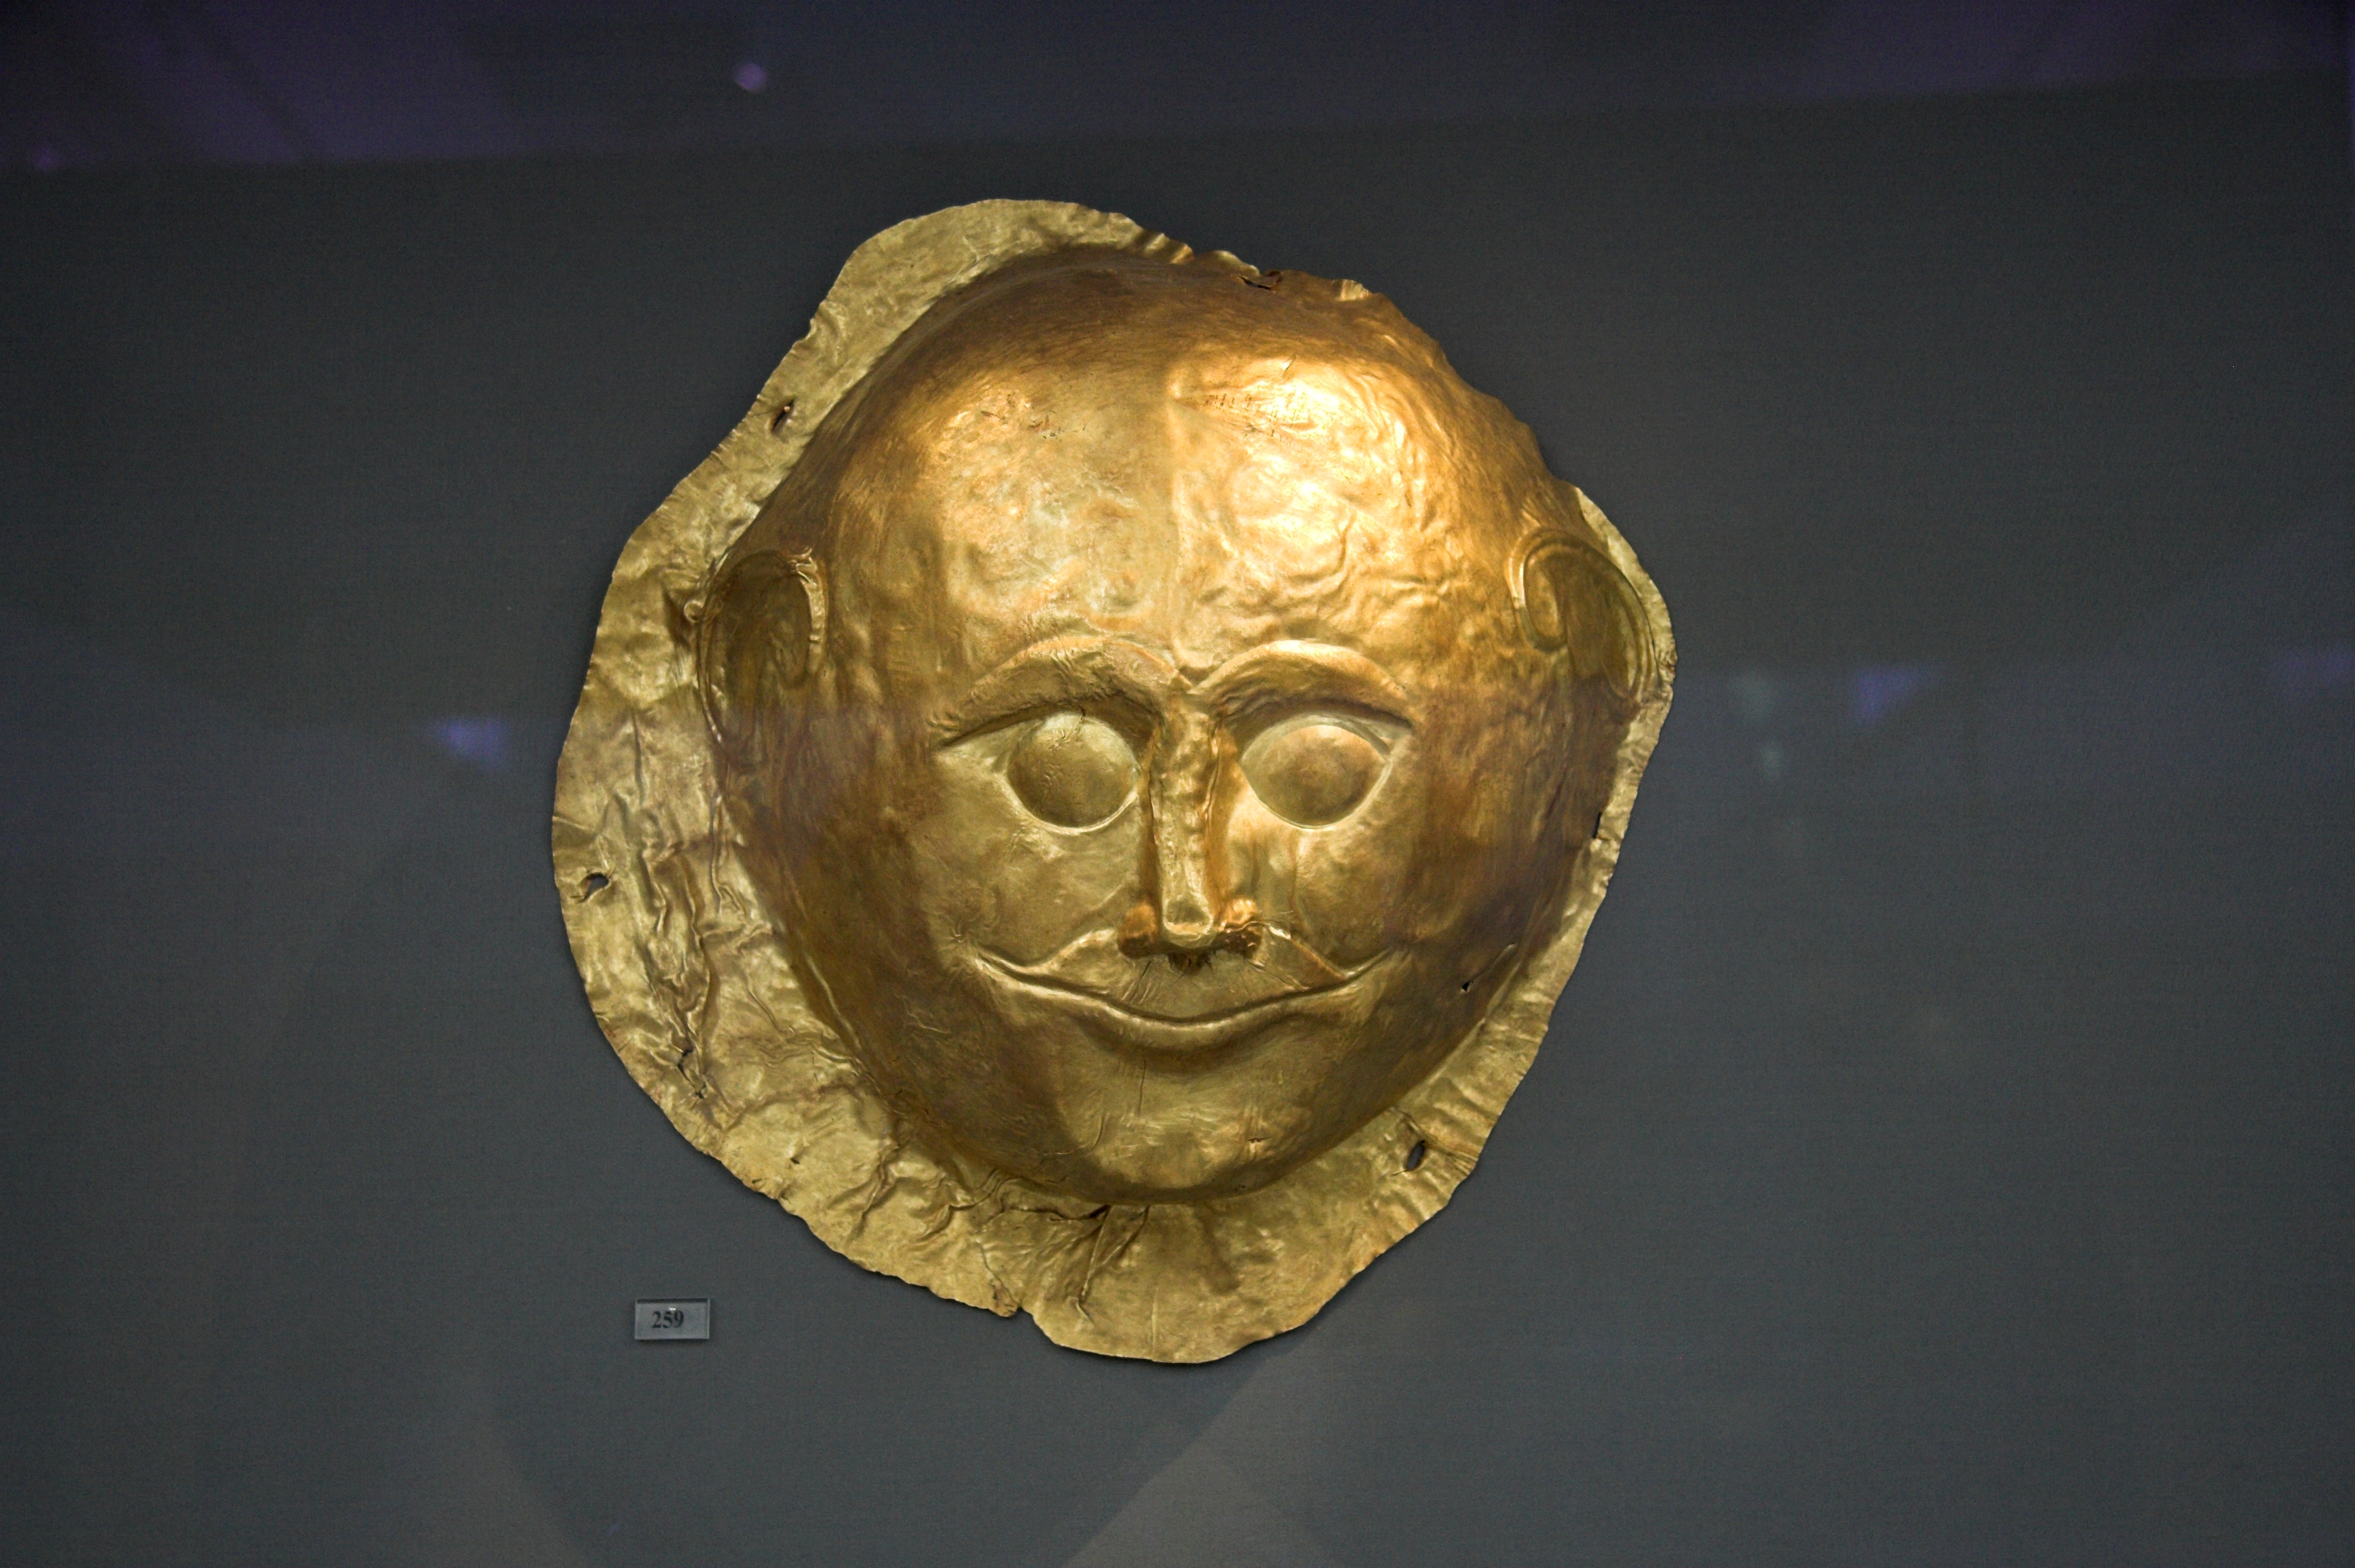 mycenaean funerary mask